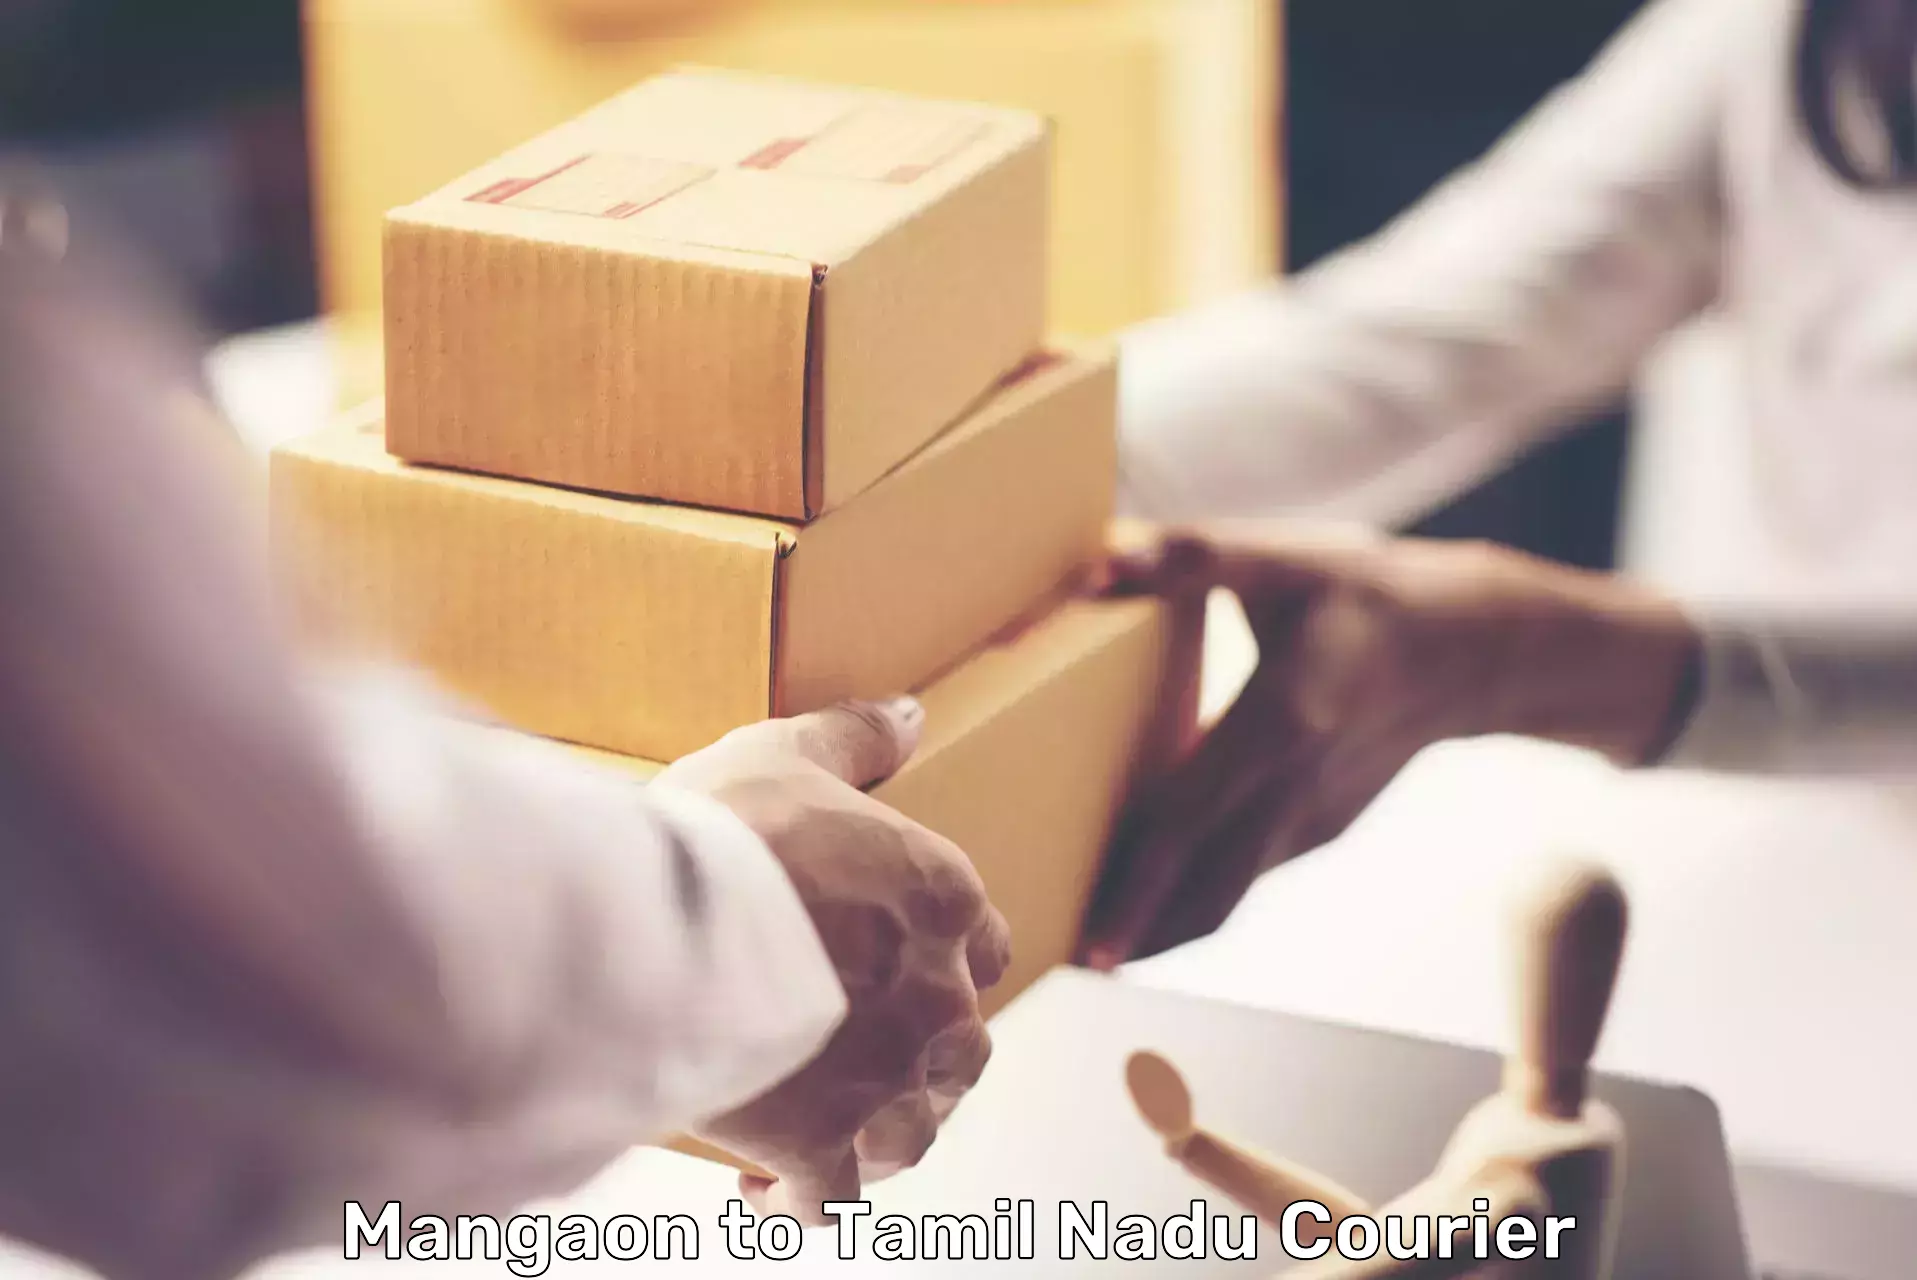 Reliable delivery network Mangaon to Devakottai